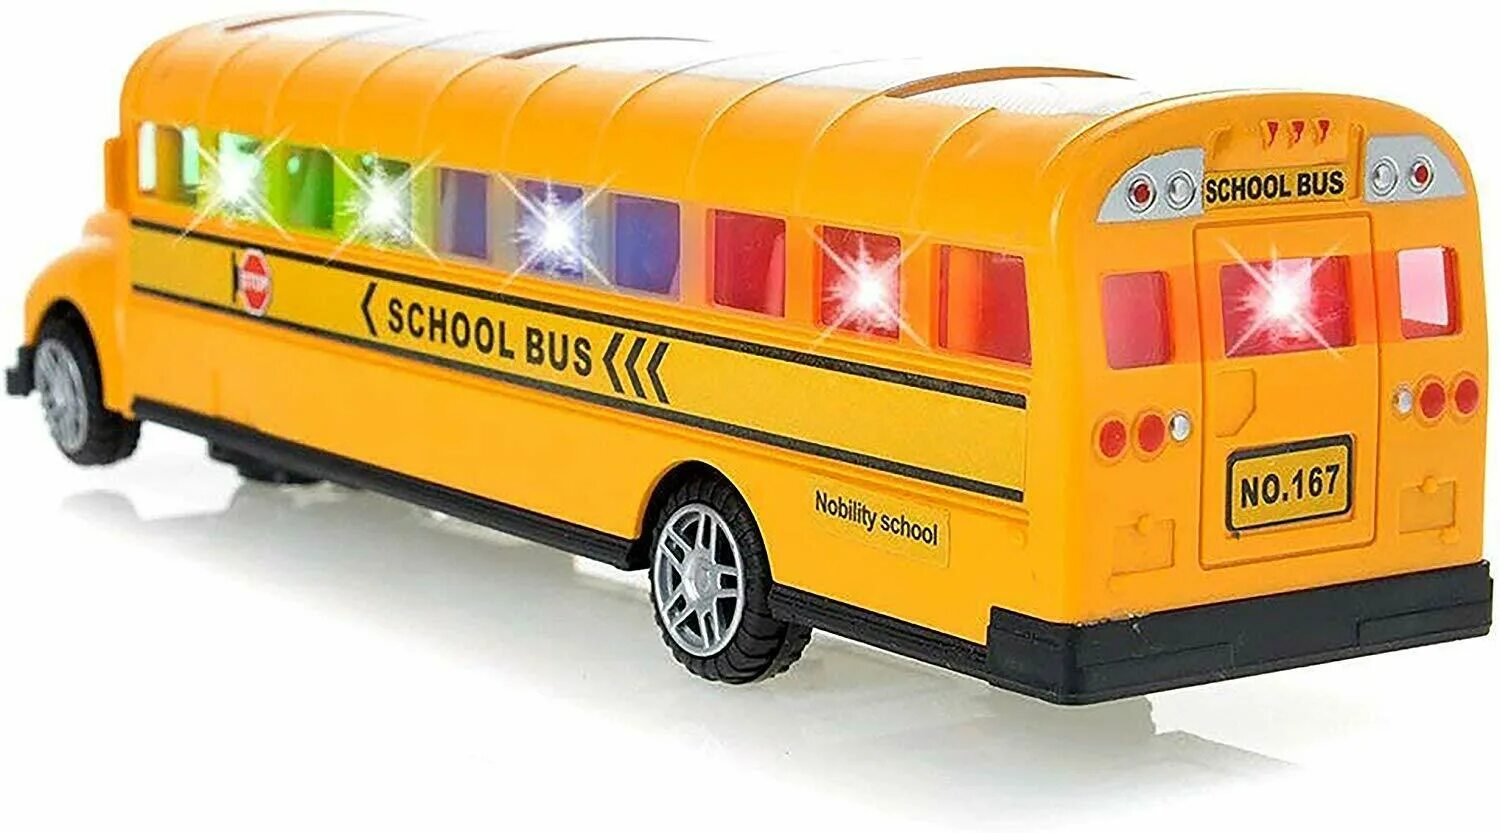 Bus toys. Игрушка автобус. Модель школьного автобуса. Игрушечный школьный автобус. School Bus игрушка.